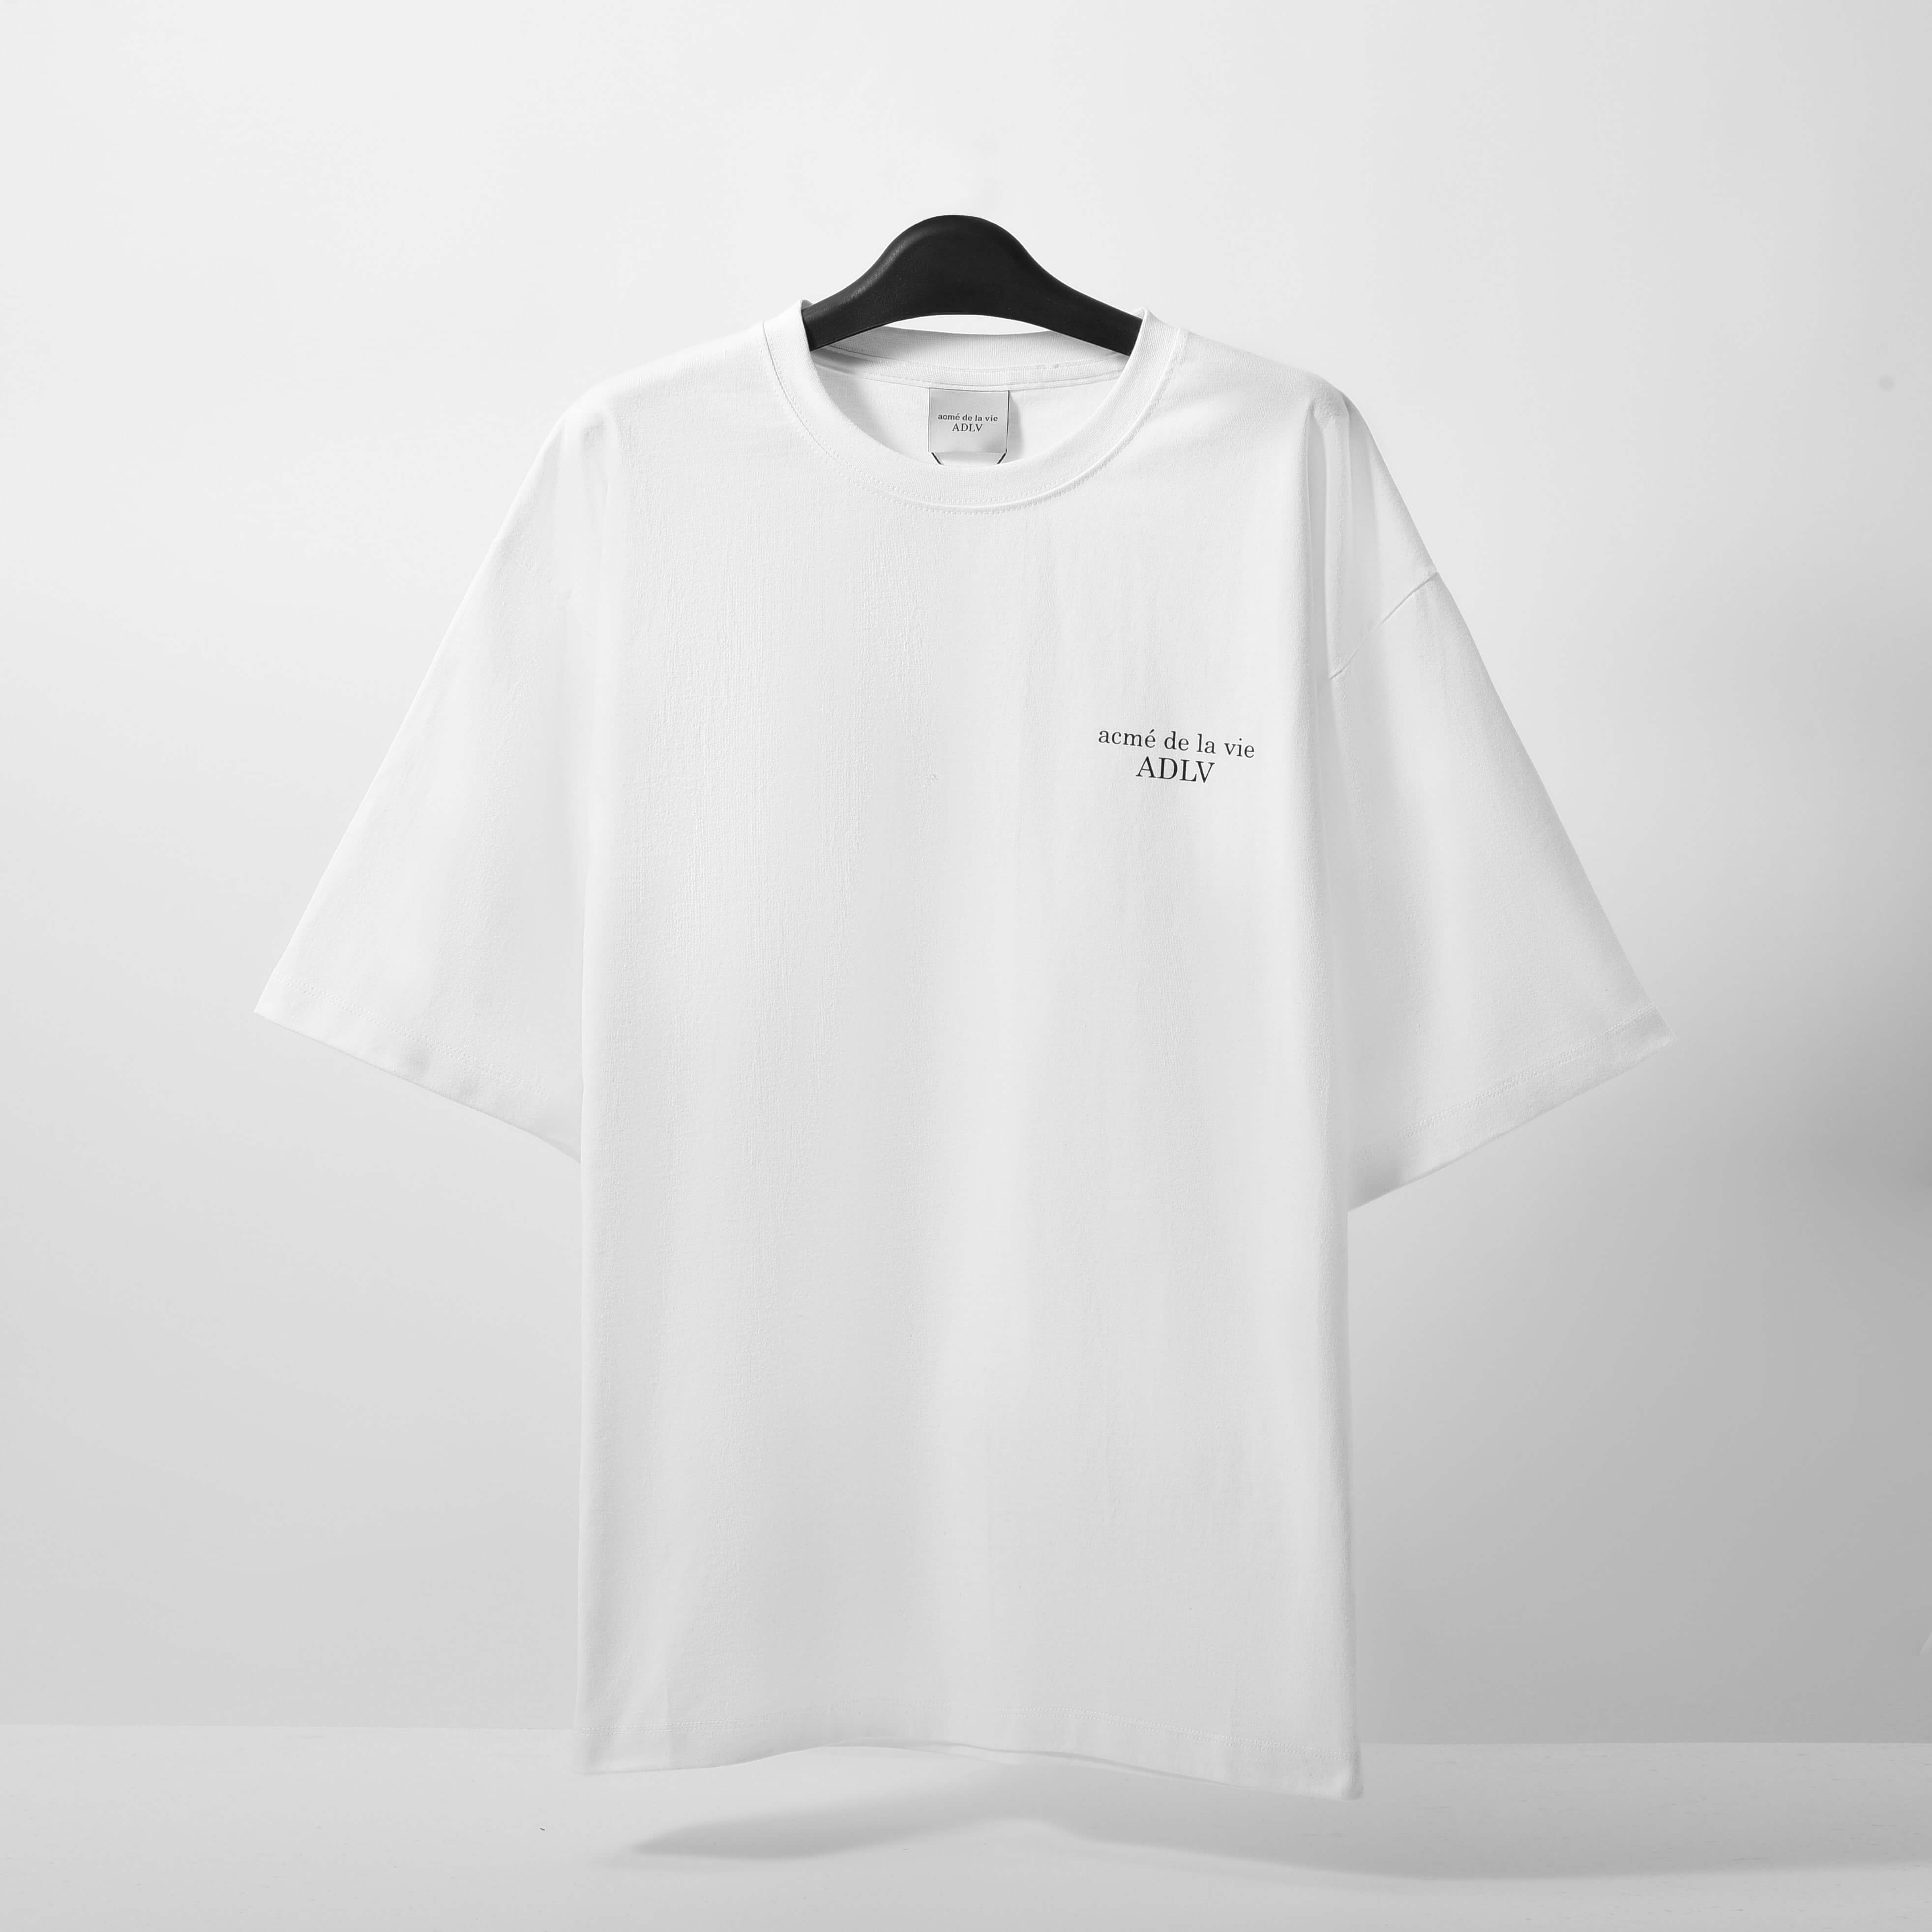 ADLV Basic Tshirt - White